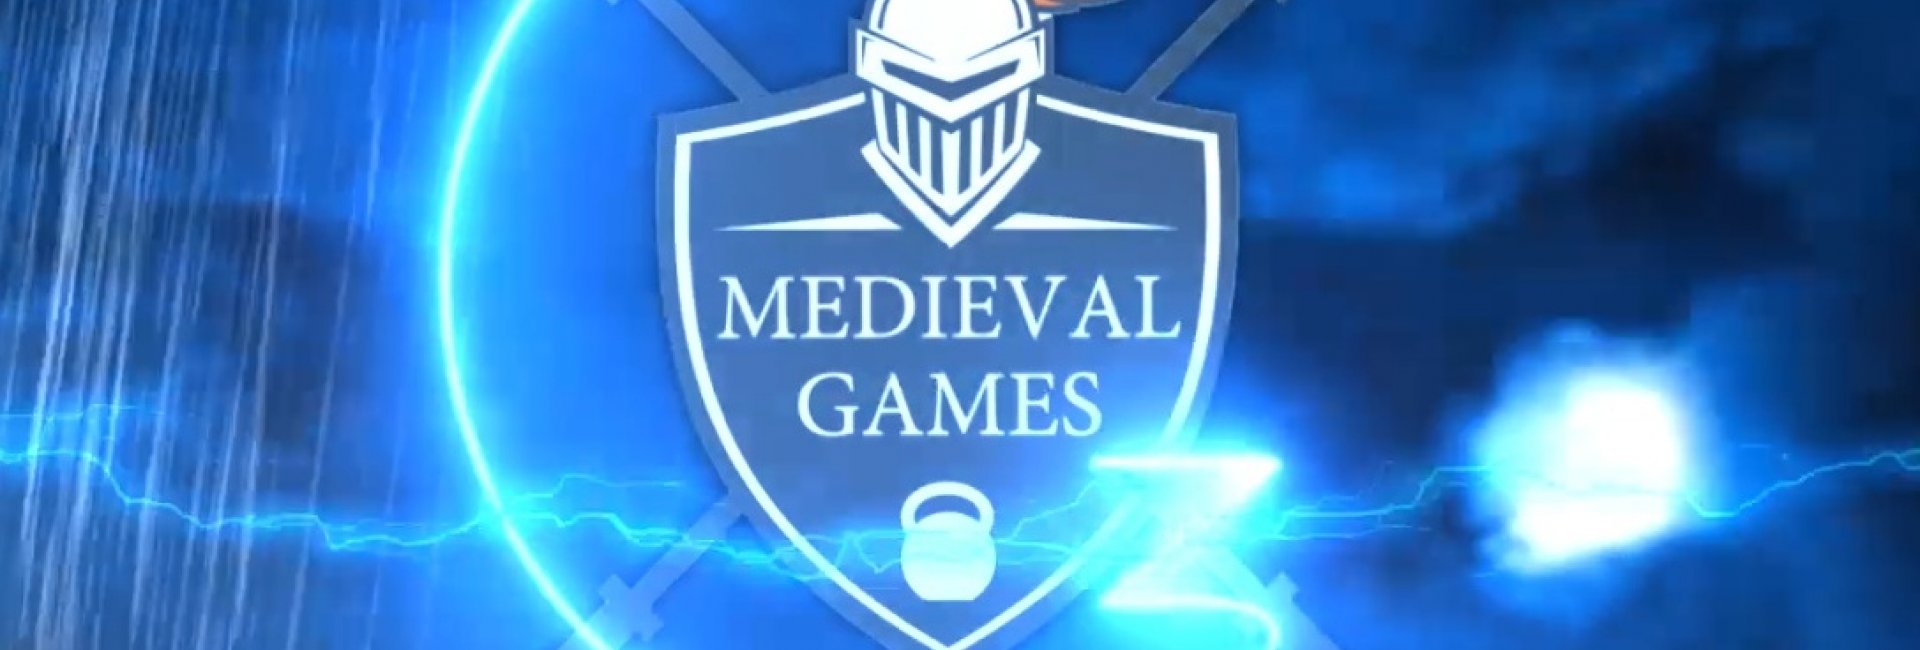 Medieval Games 2019